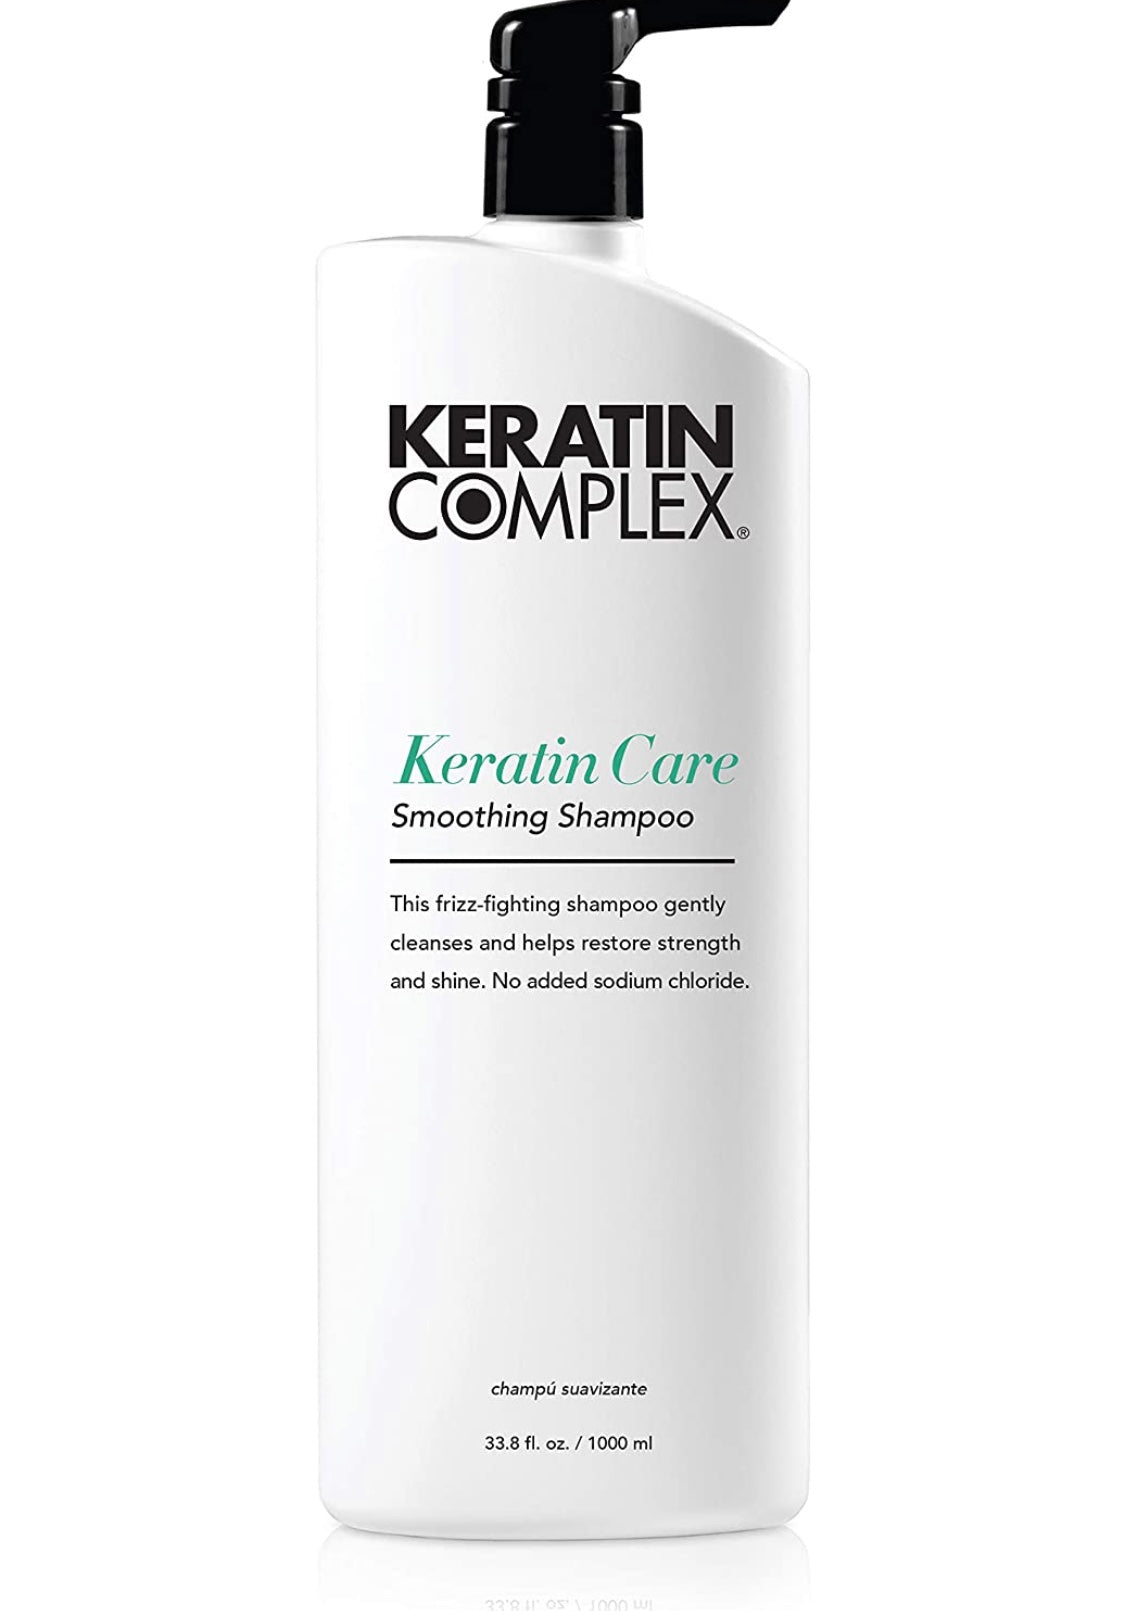 Keratin complex - Keratin Care shampoo 33.8 fl. oz./ 1000 ml